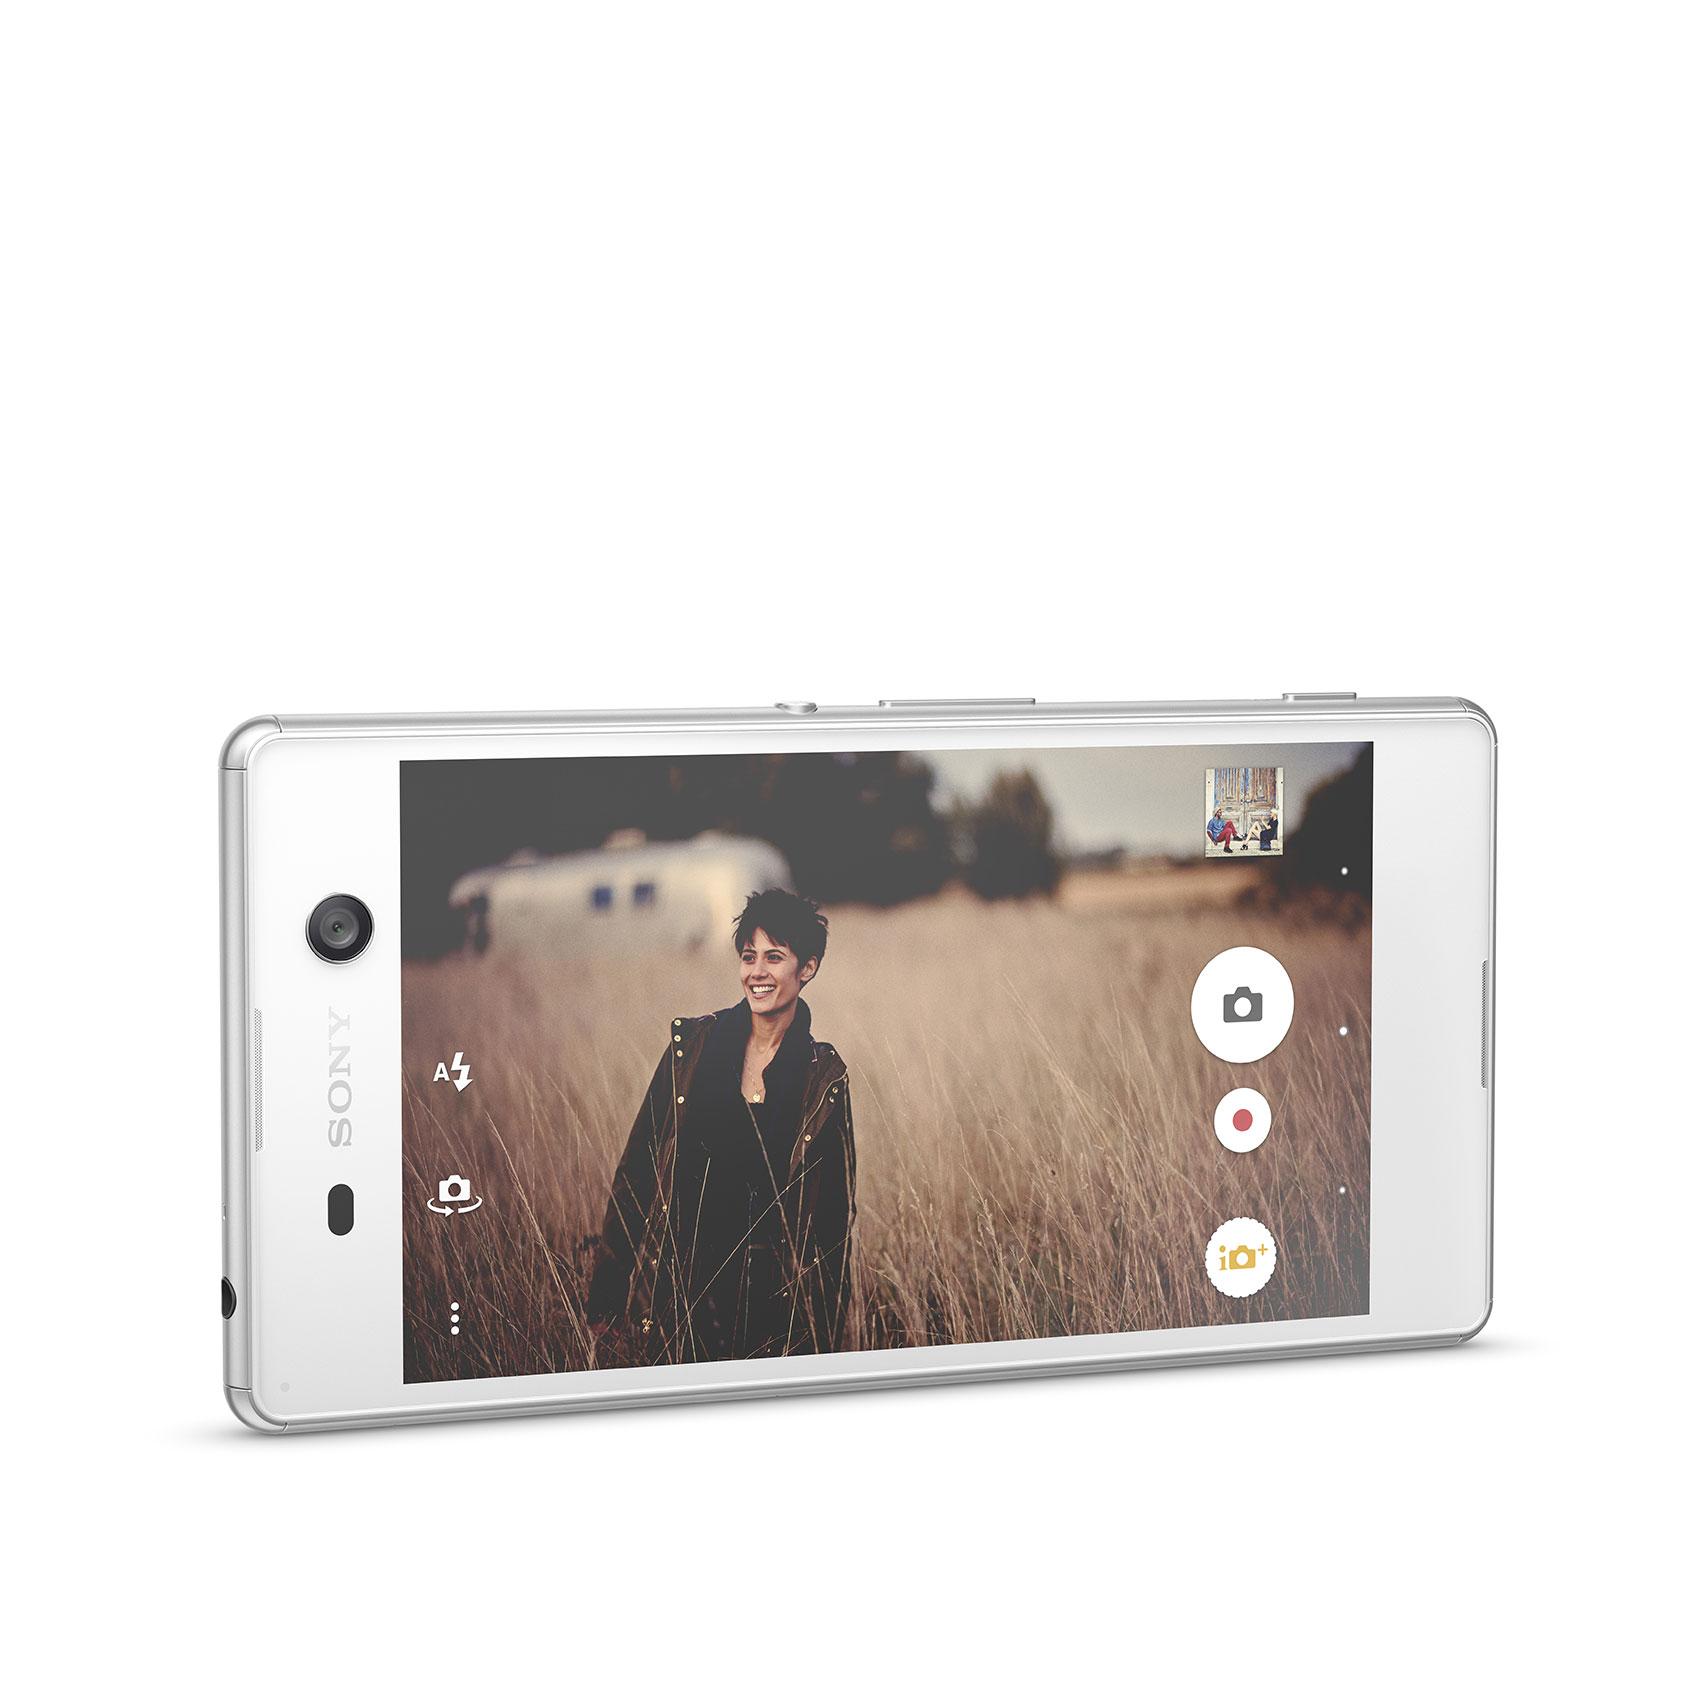 Sony Xperia M5 blanco en modo vídeo